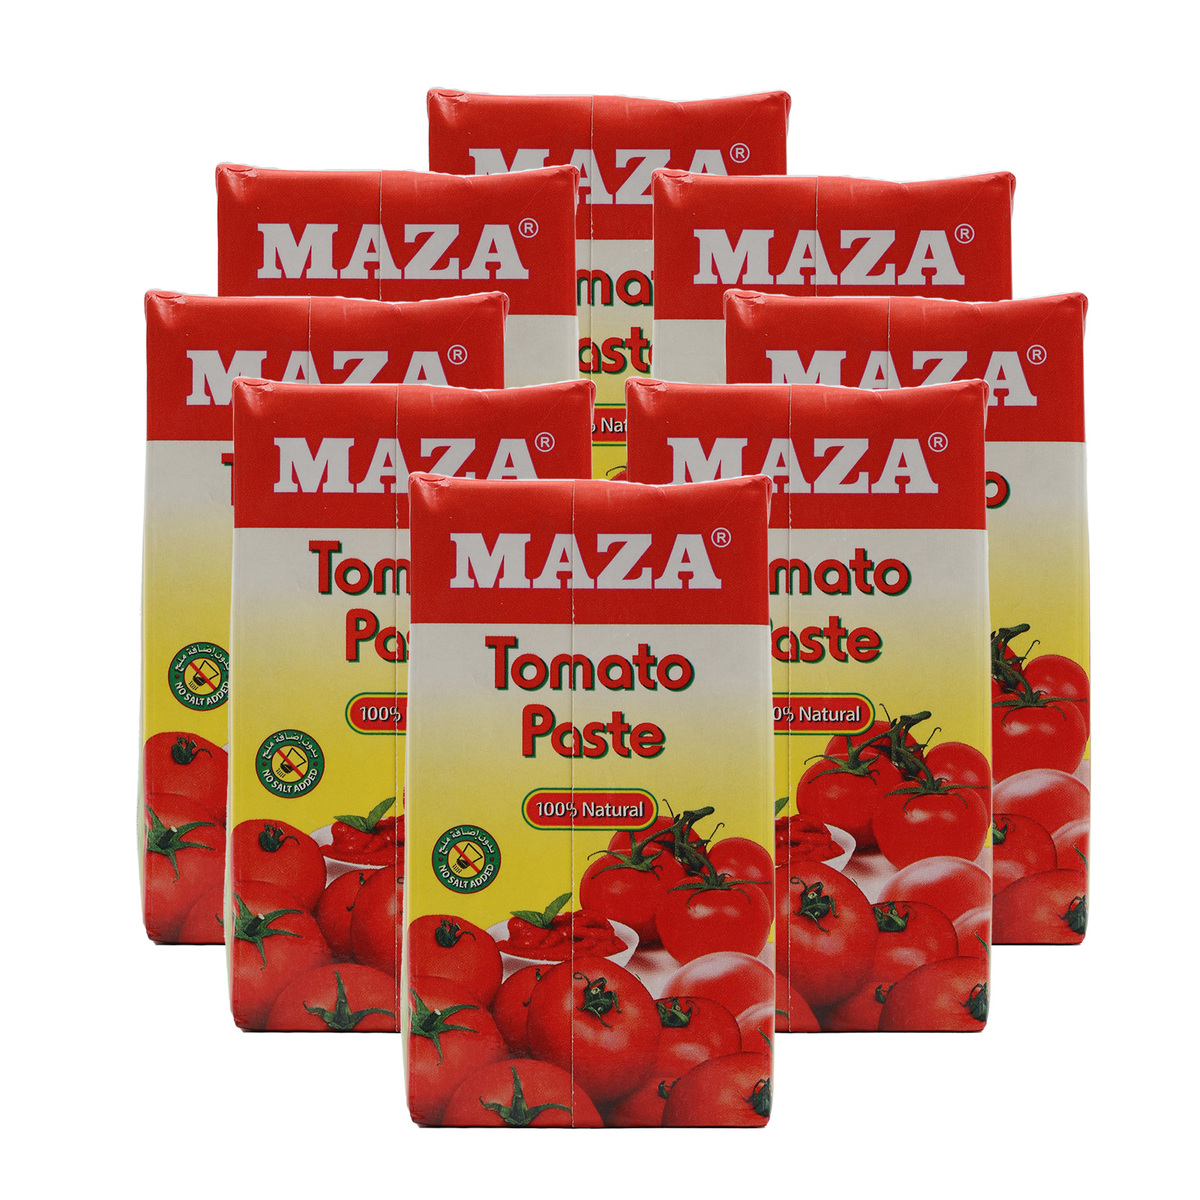 Maza Tomato Paste 8 x 135g